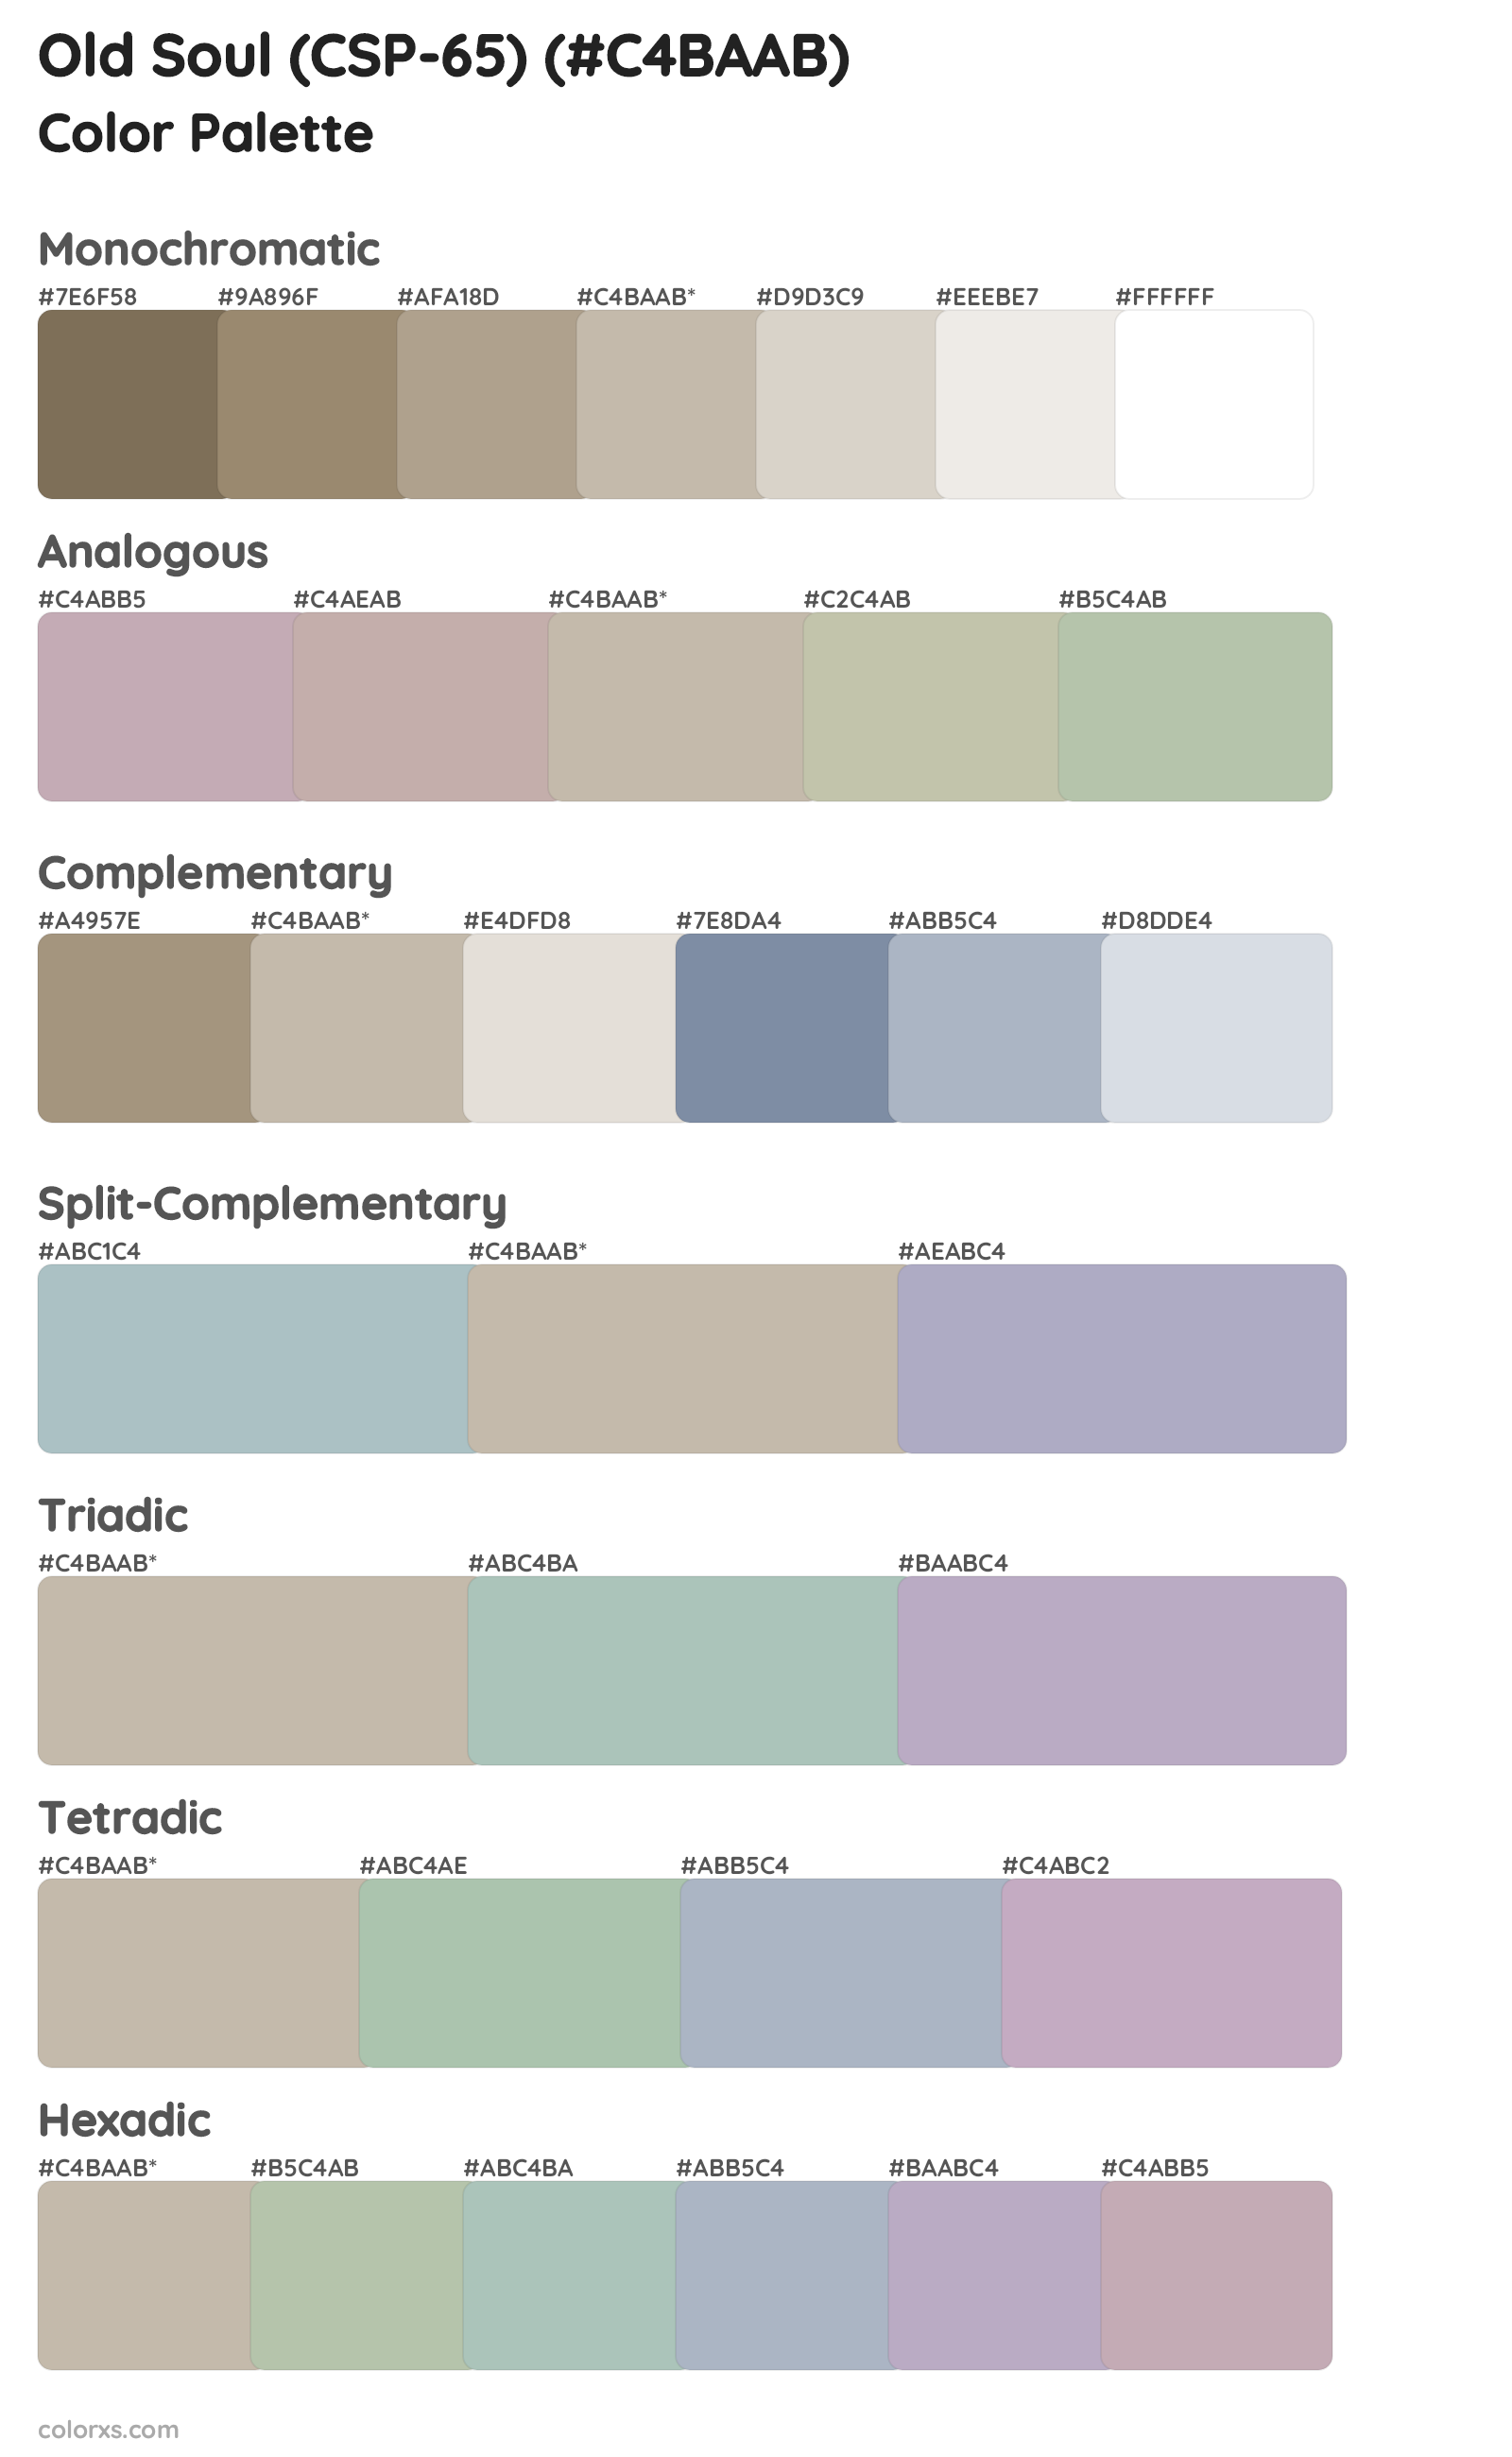 Old Soul (CSP-65) Color Scheme Palettes